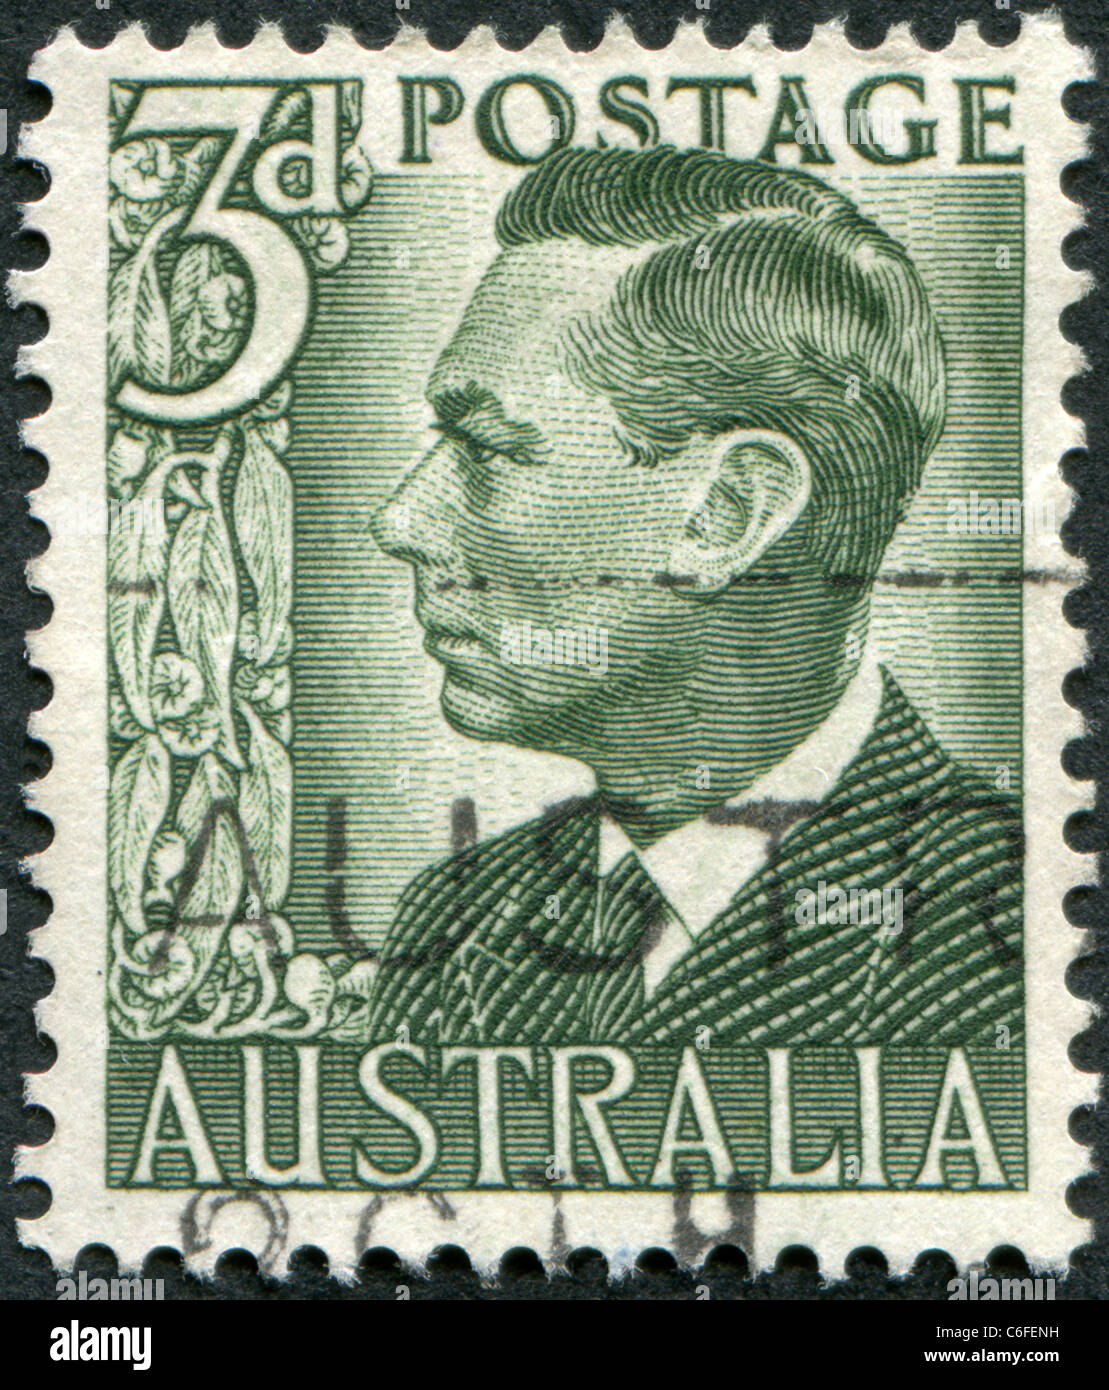 Australien - 1951: Eine Briefmarke gedruckt in Australien zeigt König George VI Stockfoto